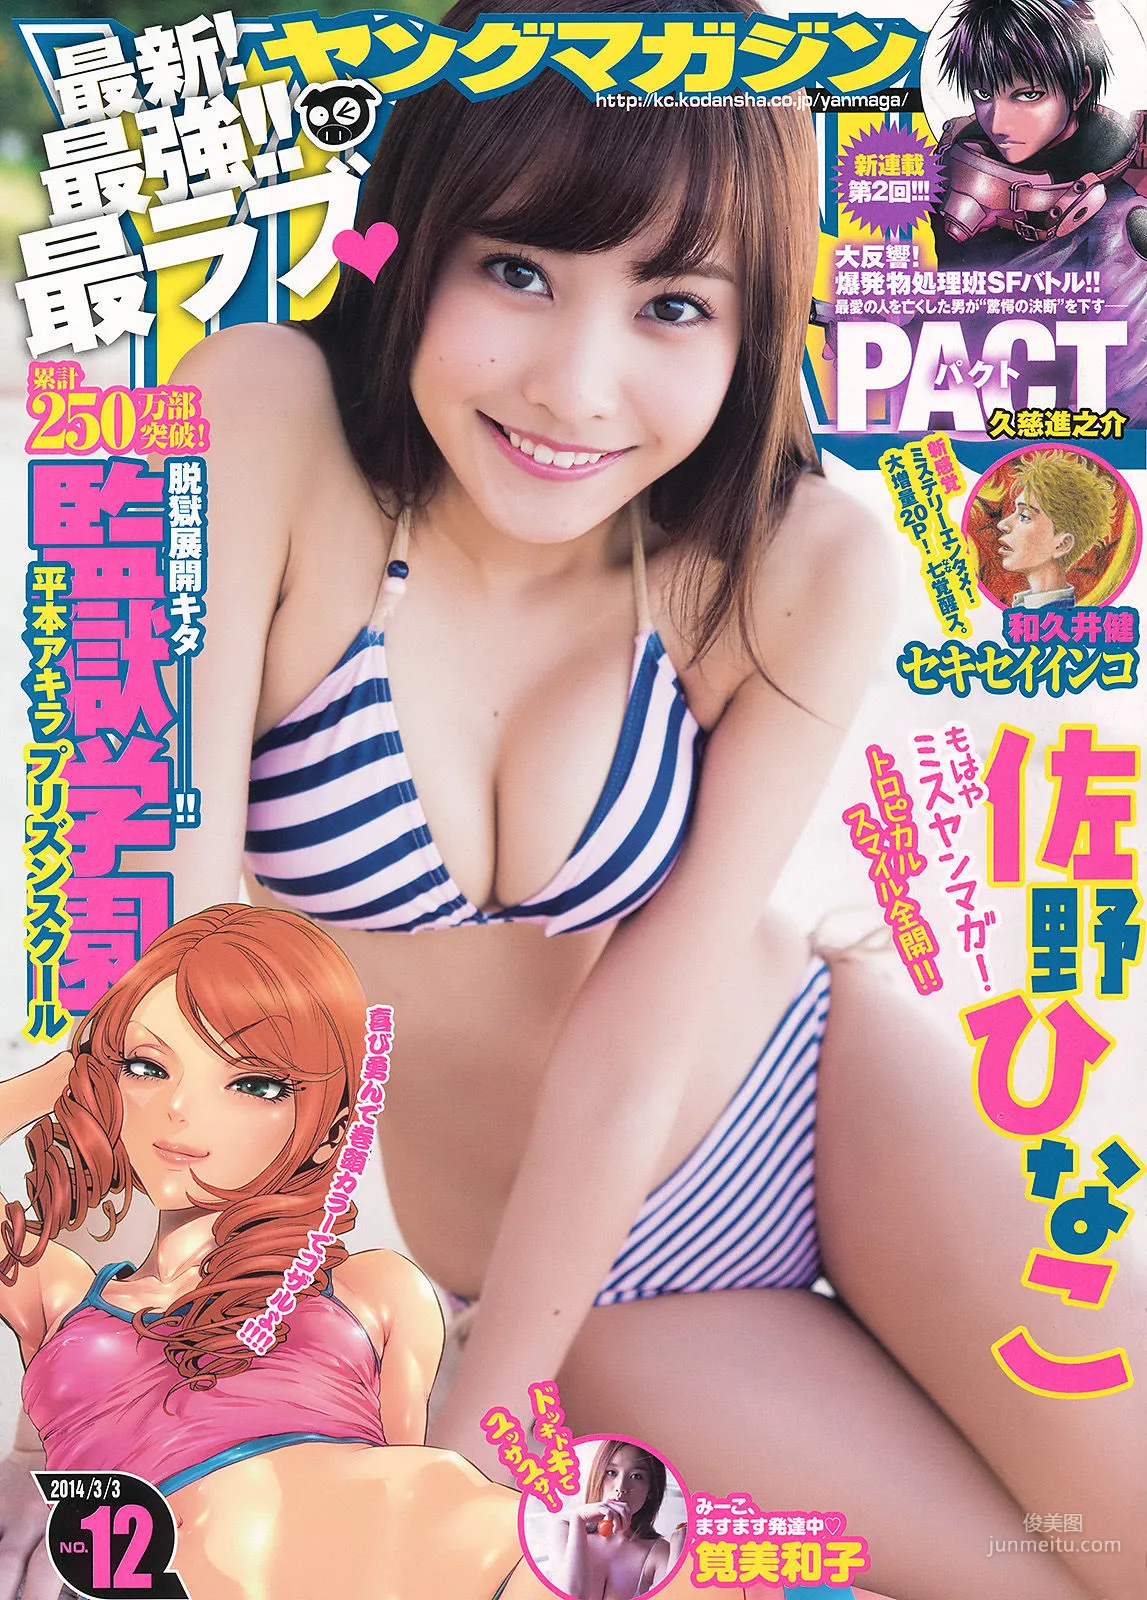 [Young Magazine] 佐野ひなこ 筧美和子 2014年No.12 写真杂志1